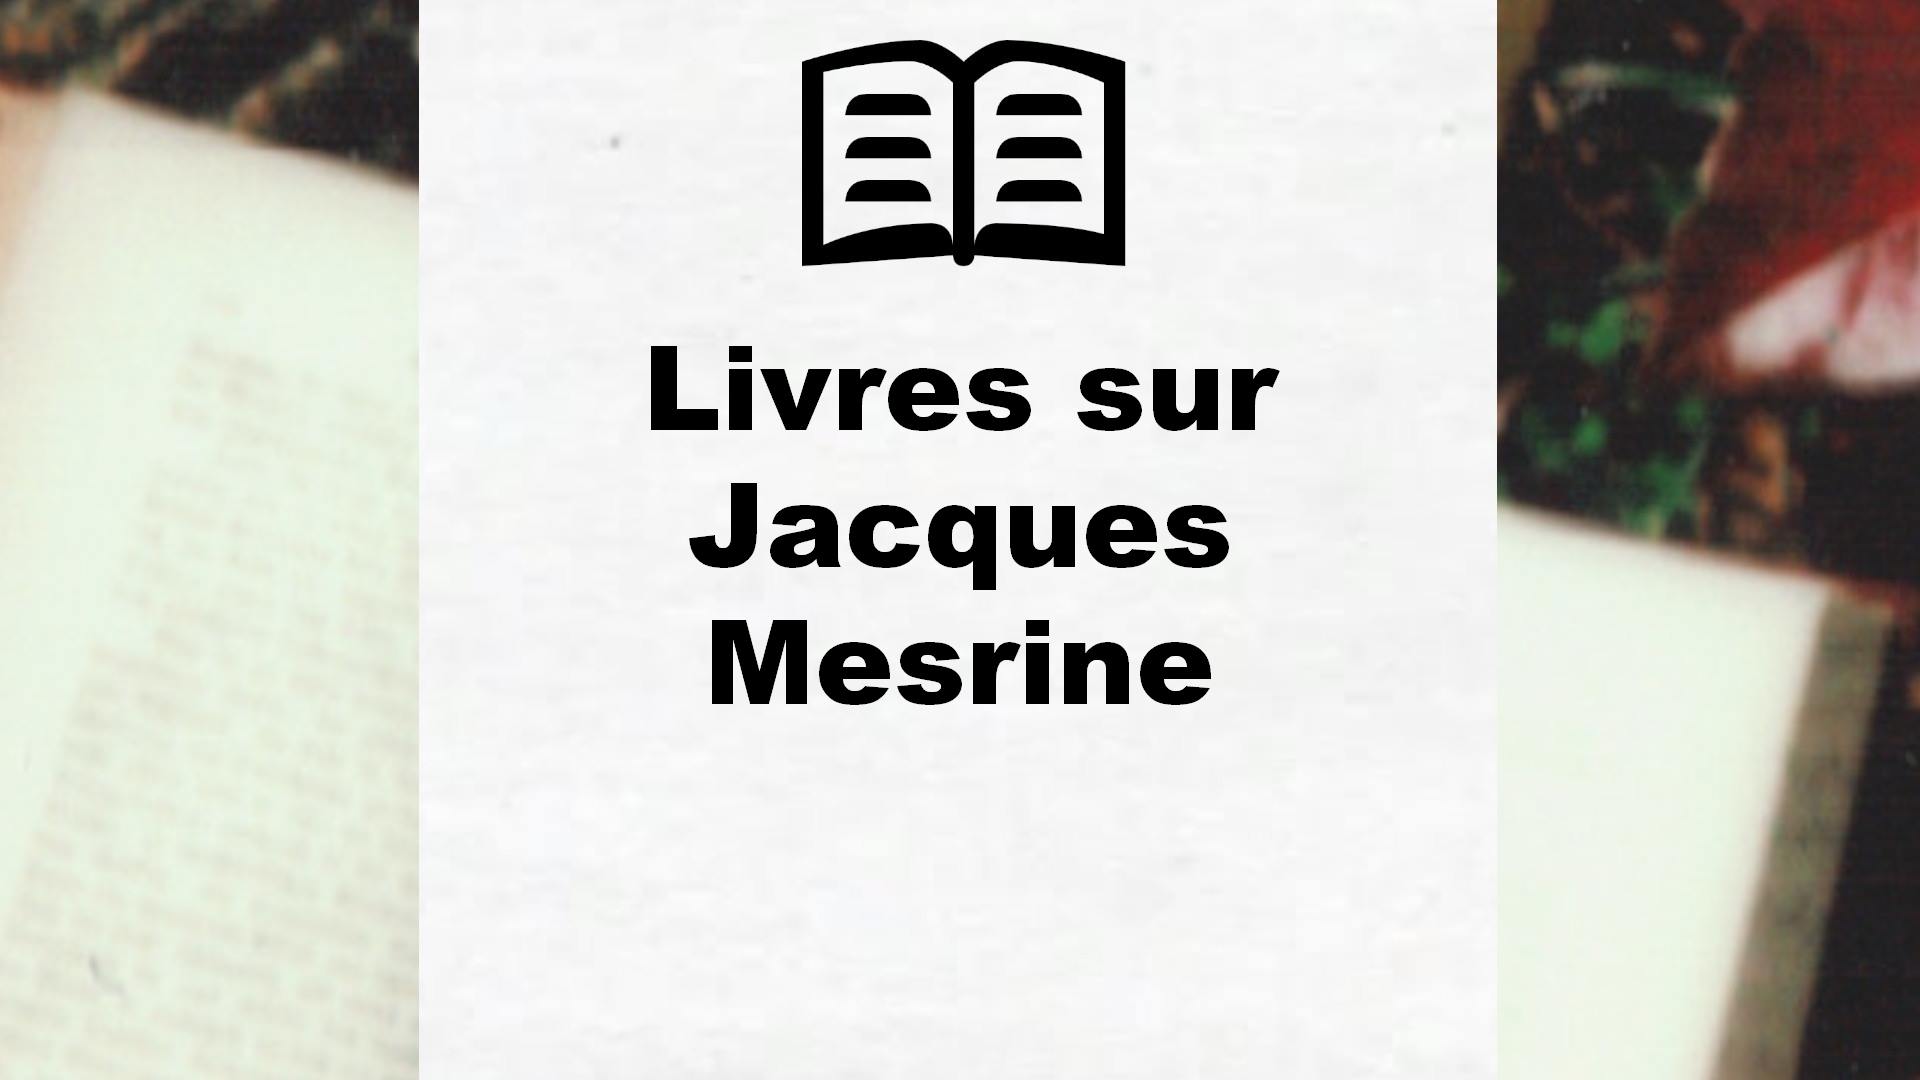 Livres sur Jacques Mesrine